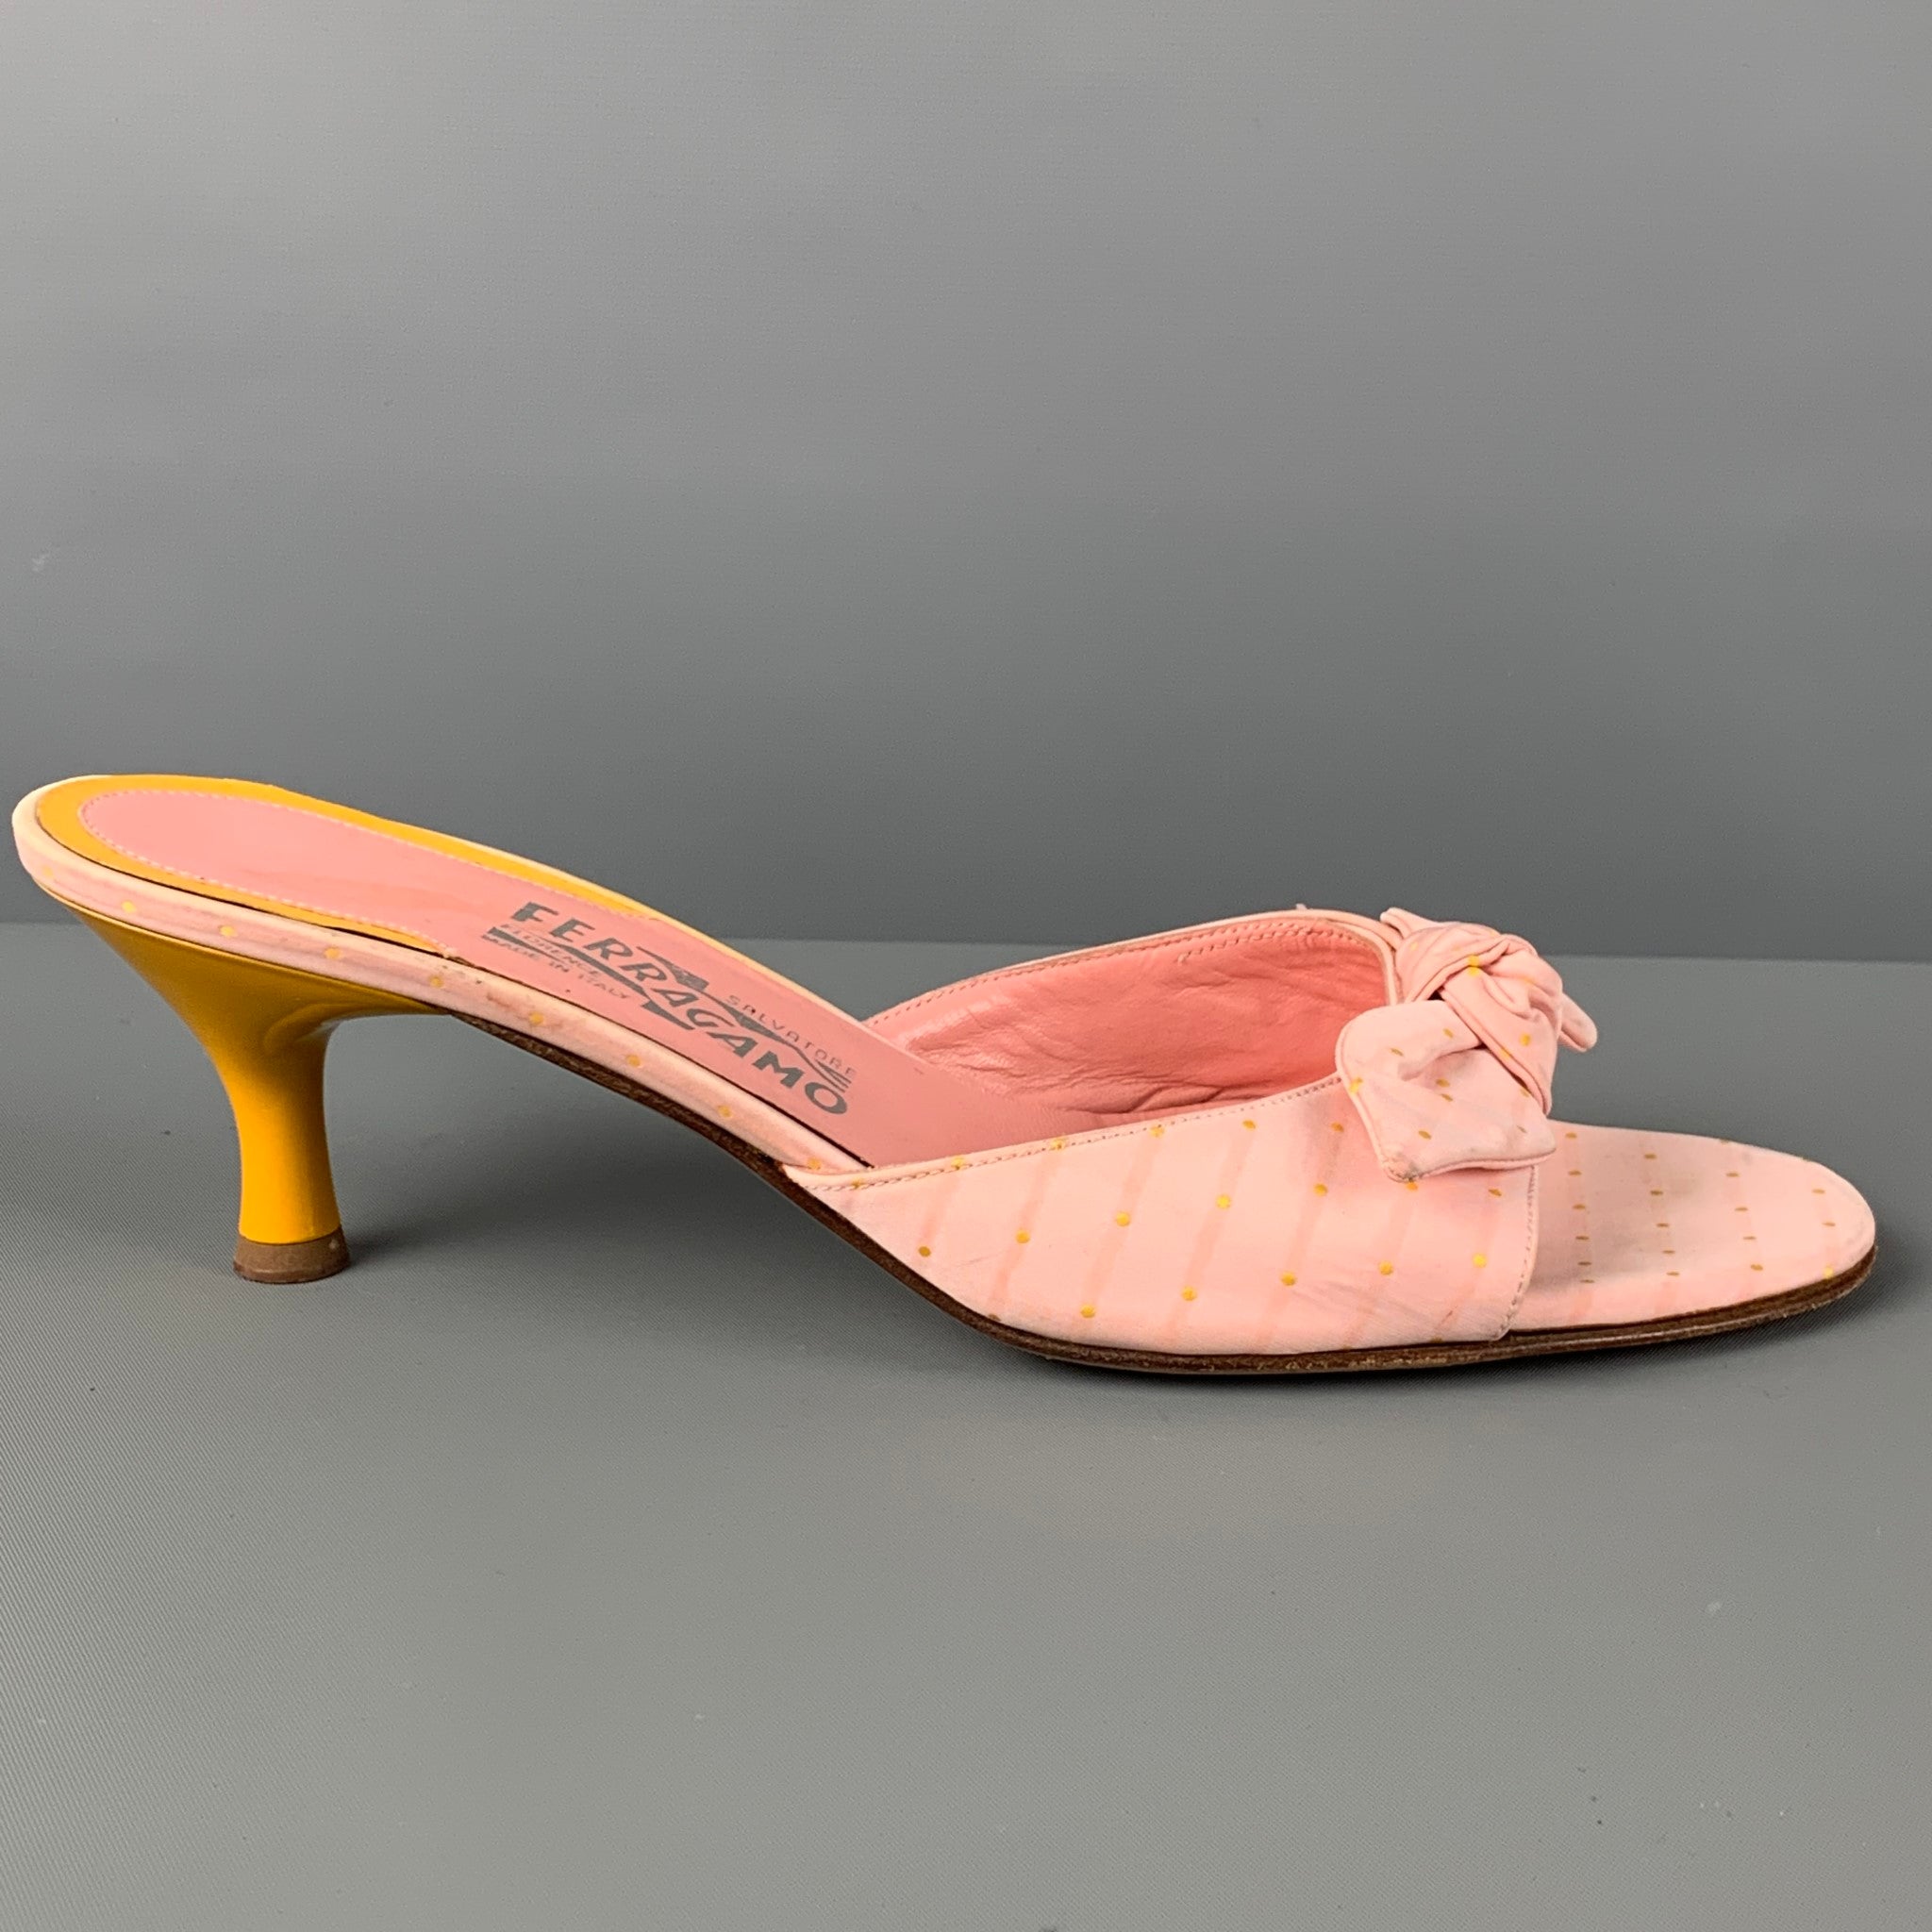 Buy Salvatore Ferragamo Heels & Wedges - Women